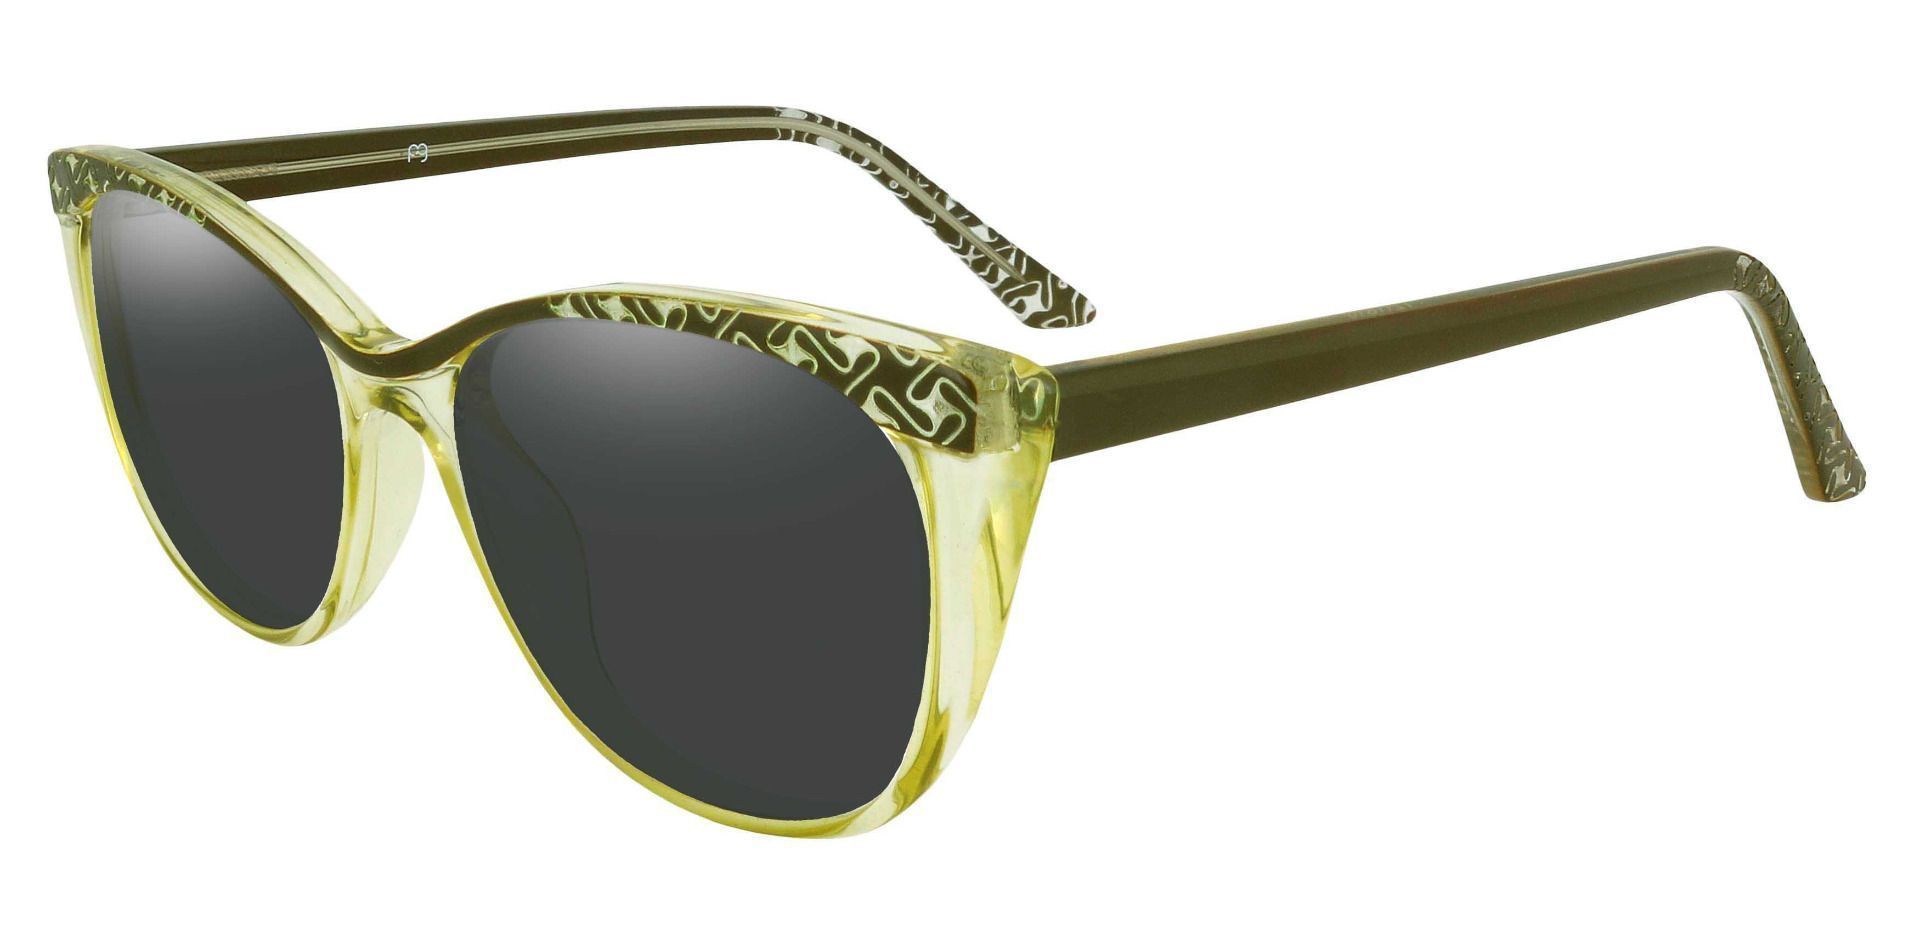 Alberta Cat Eye Prescription Sunglasses - Green Frame With Gray Lenses